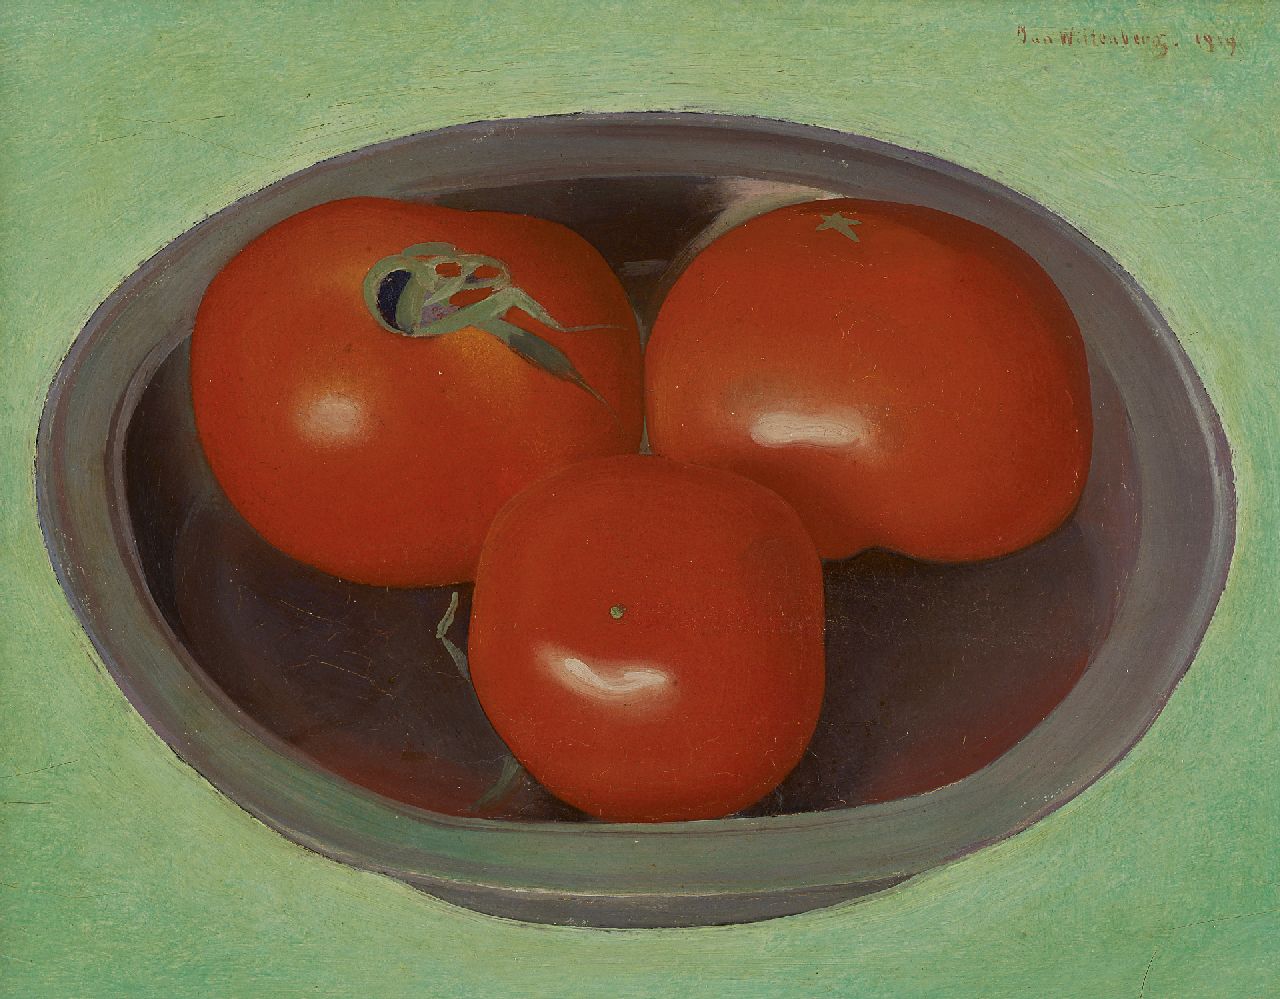 Wittenberg J.H.W.  | 'Jan' Hendrik Willem Wittenberg, Stilleven van drie tomaten op een bord, olieverf op doek op schildersboard 17,5 x 23,2 cm, gesigneerd rechtsboven en gedateerd 1919